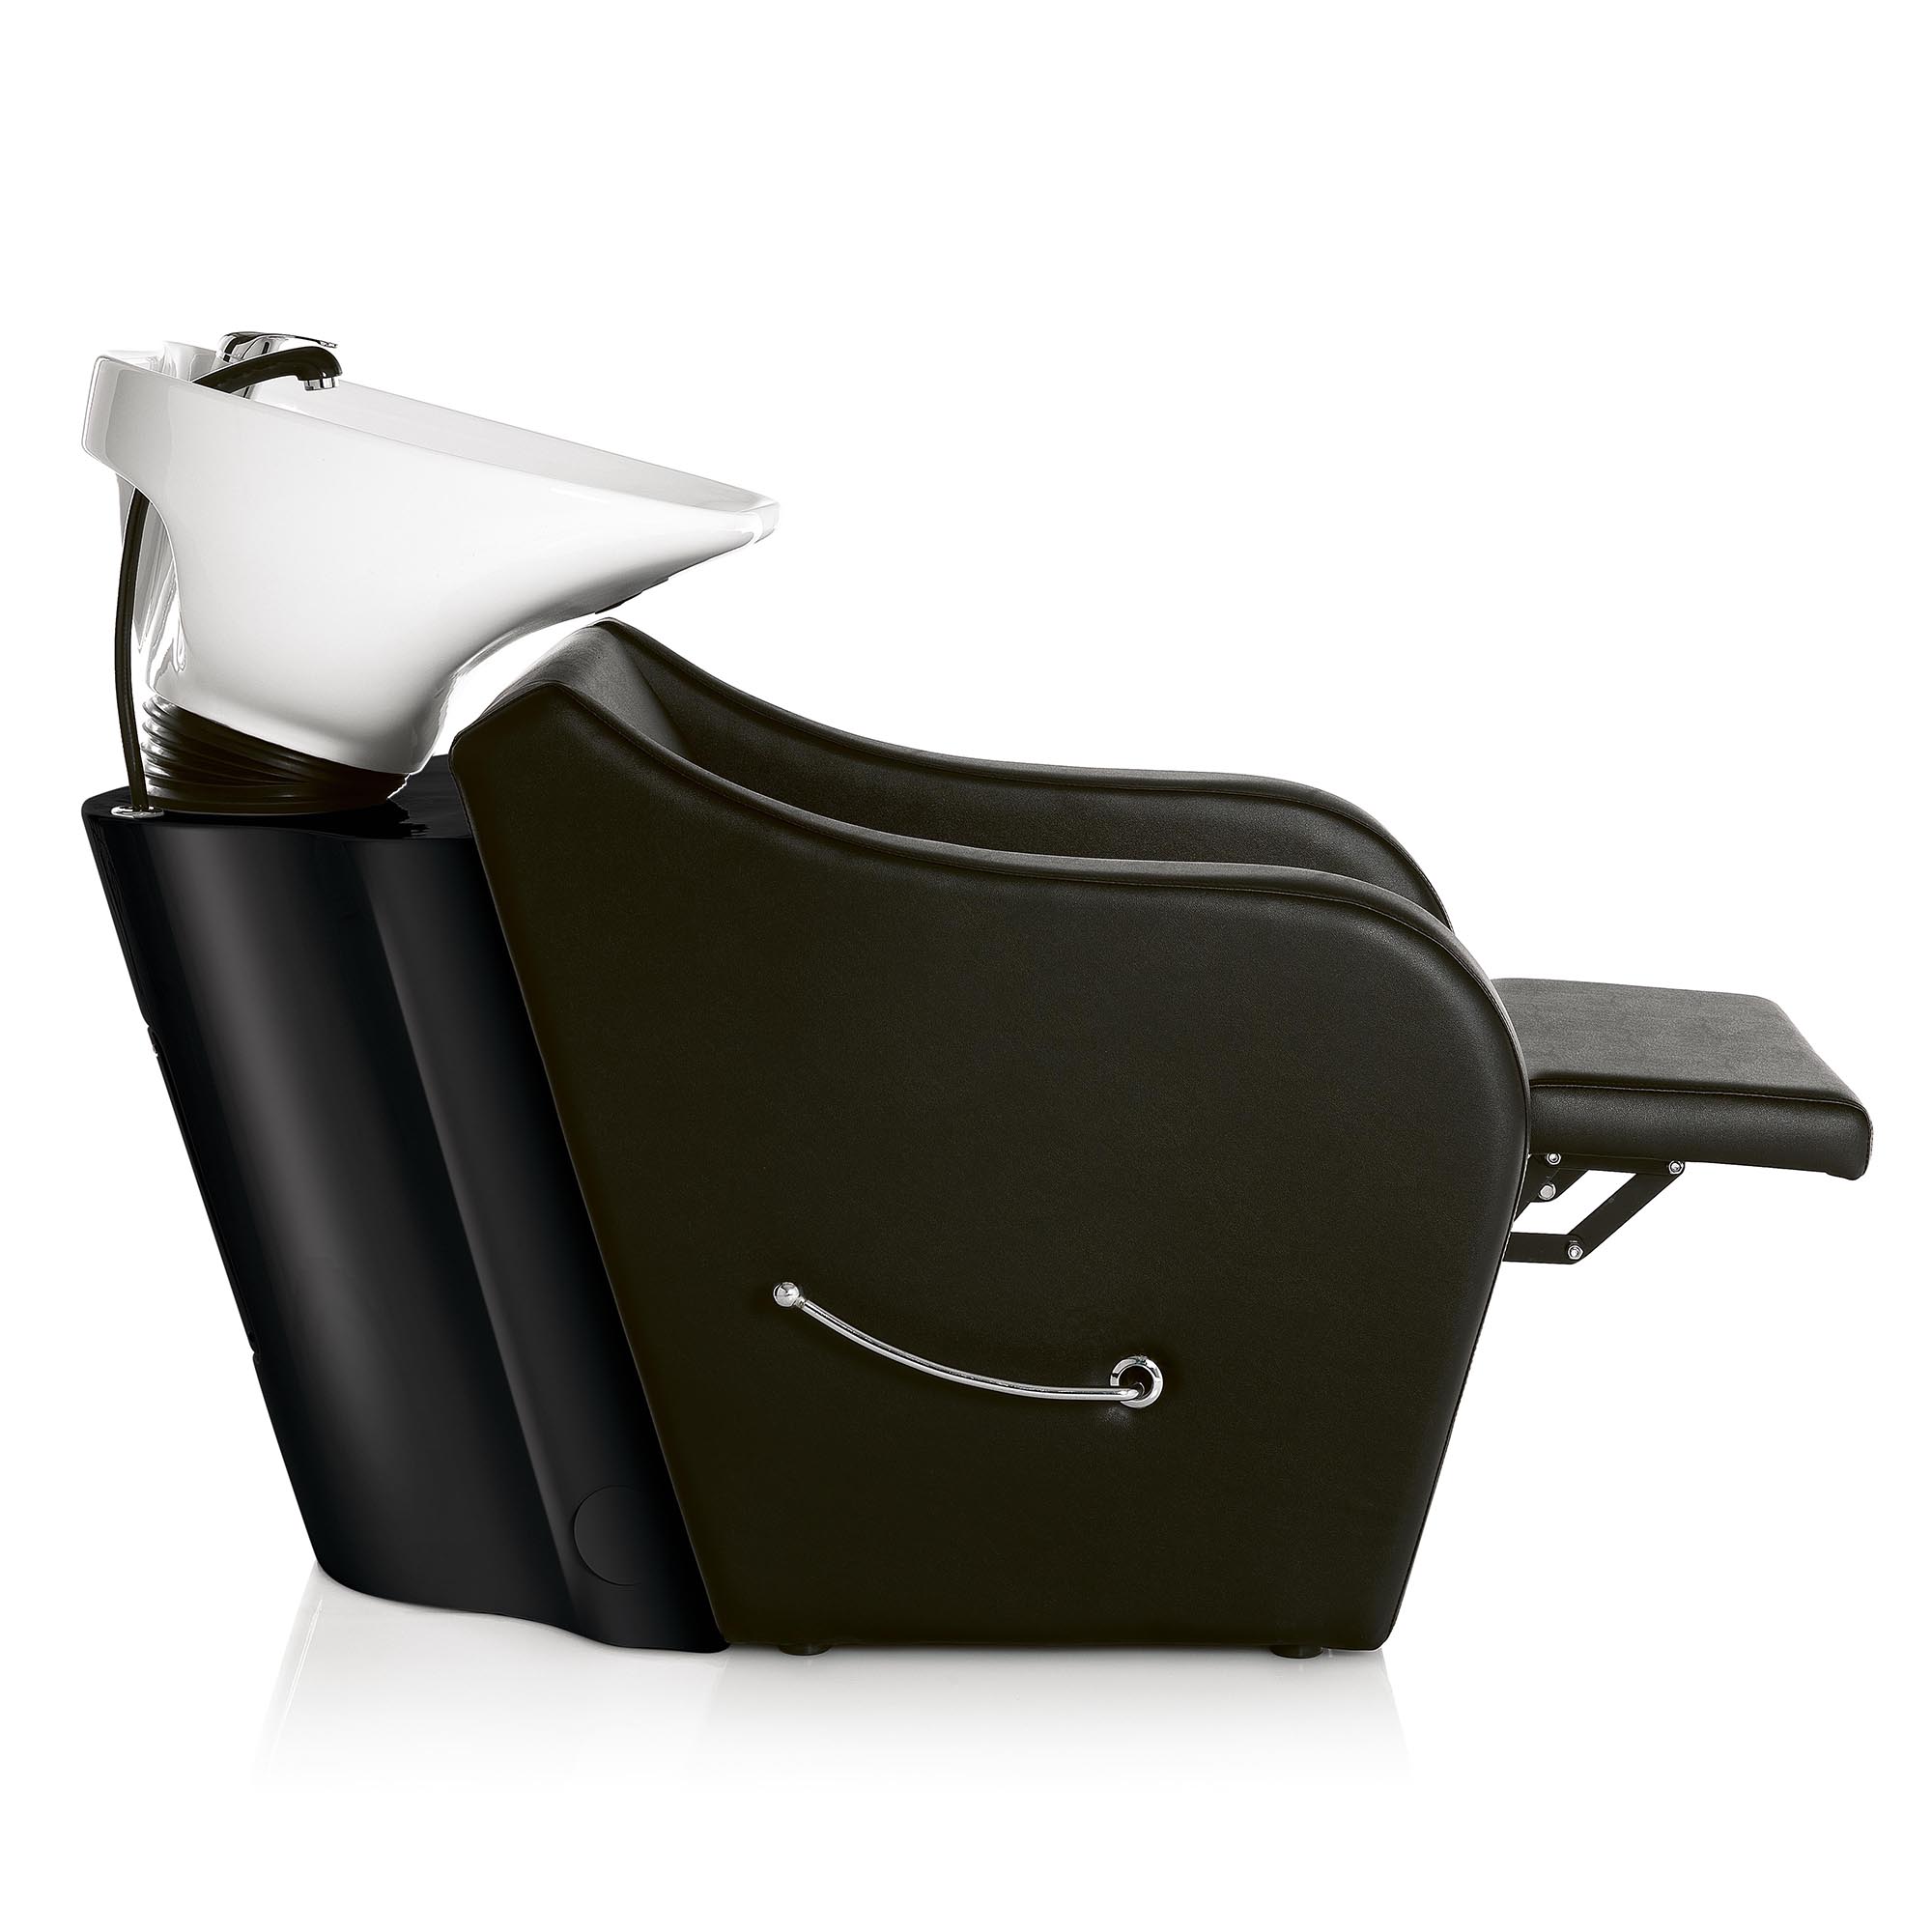 Lavatesta portatile per parrucchieri - 47 x 43 x 86 cm - Black